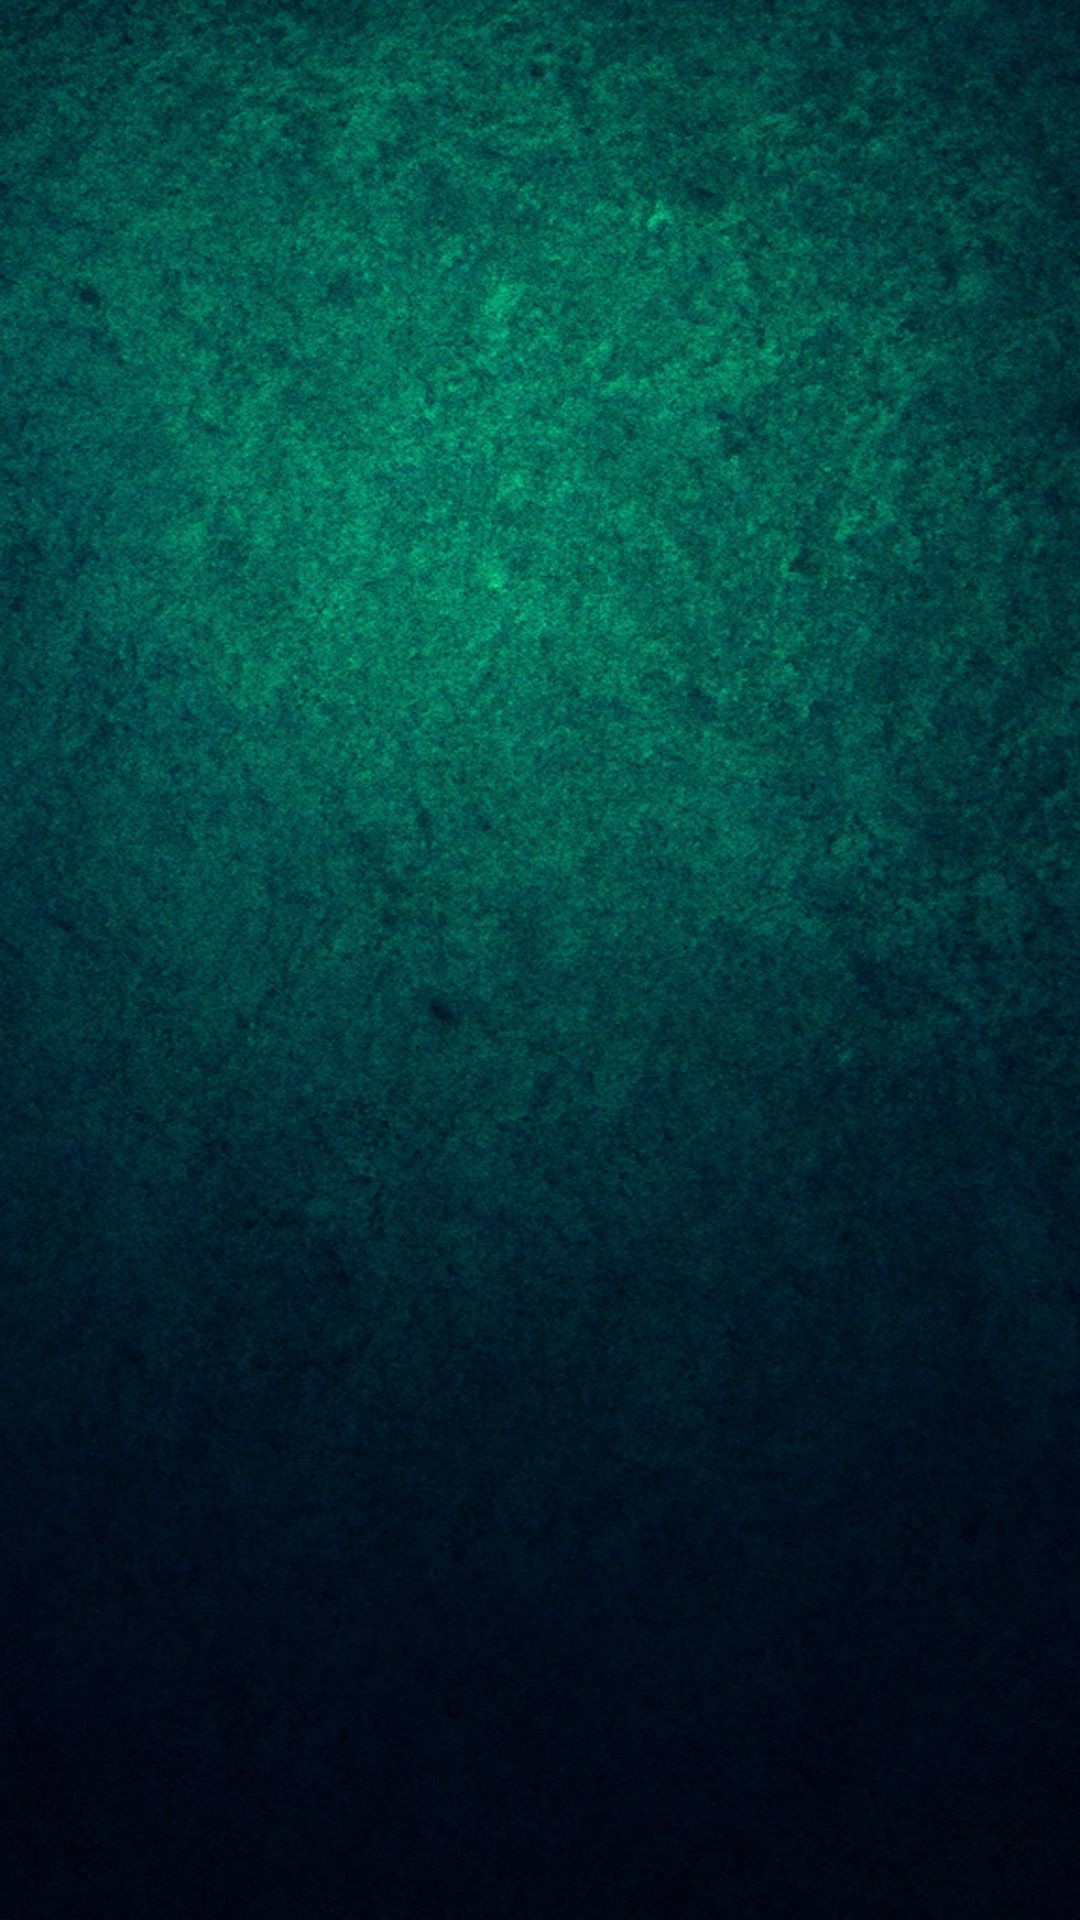 1080x1920, Lg G3 Wallpapers Hd - Dark Green Wallpaper Hd , HD Wallpaper & Backgrounds